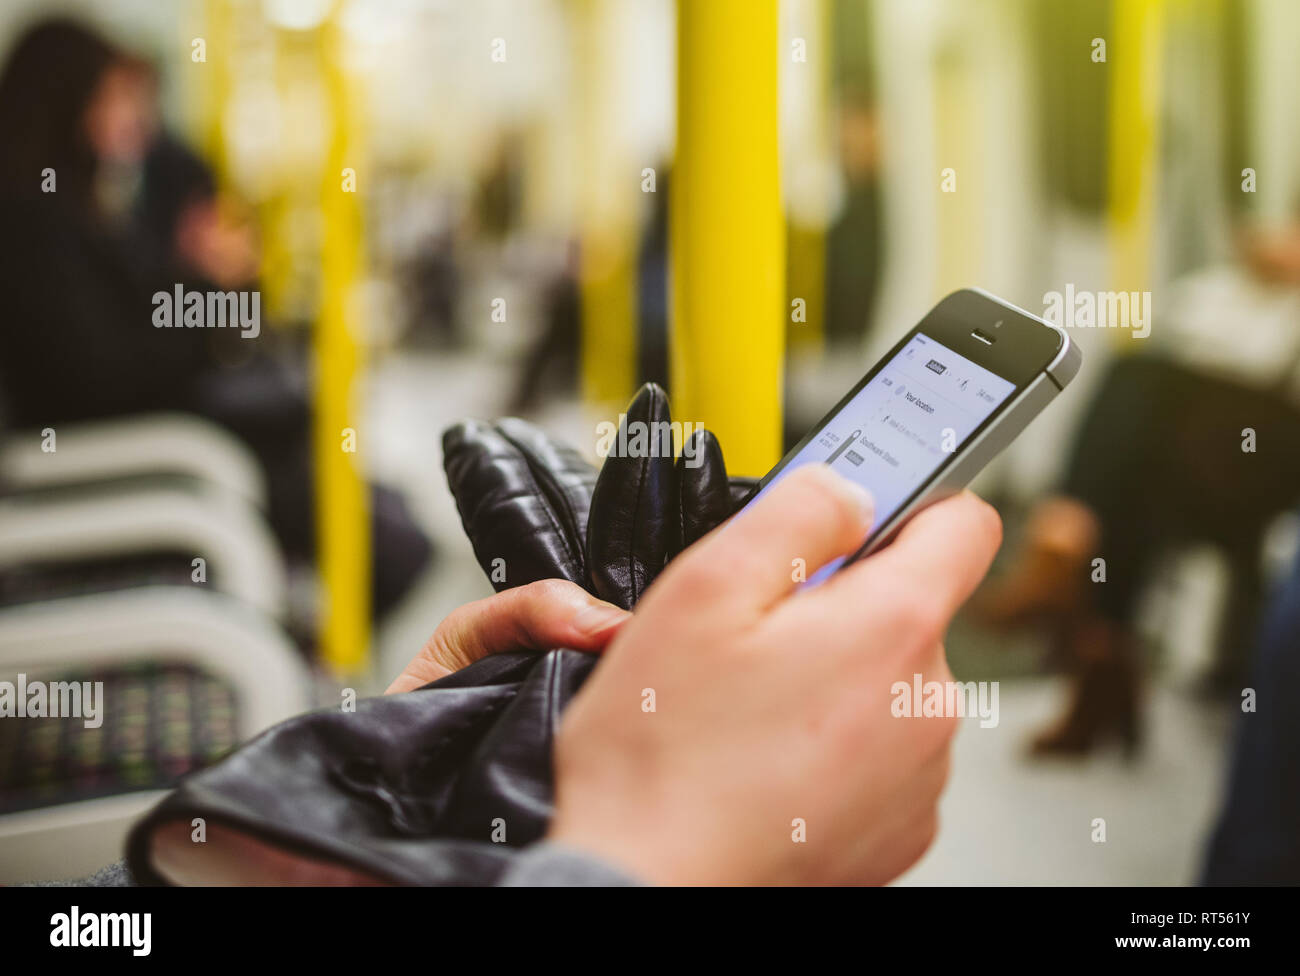 Frau mit Smartphone Telefon innerhalb der U-Bahn Station U-Karte mit Navigation Anmelden auf dem Bildschirm geöffnet und für den nächsten Zielort suchen - Wagen Innenraum Stockfoto